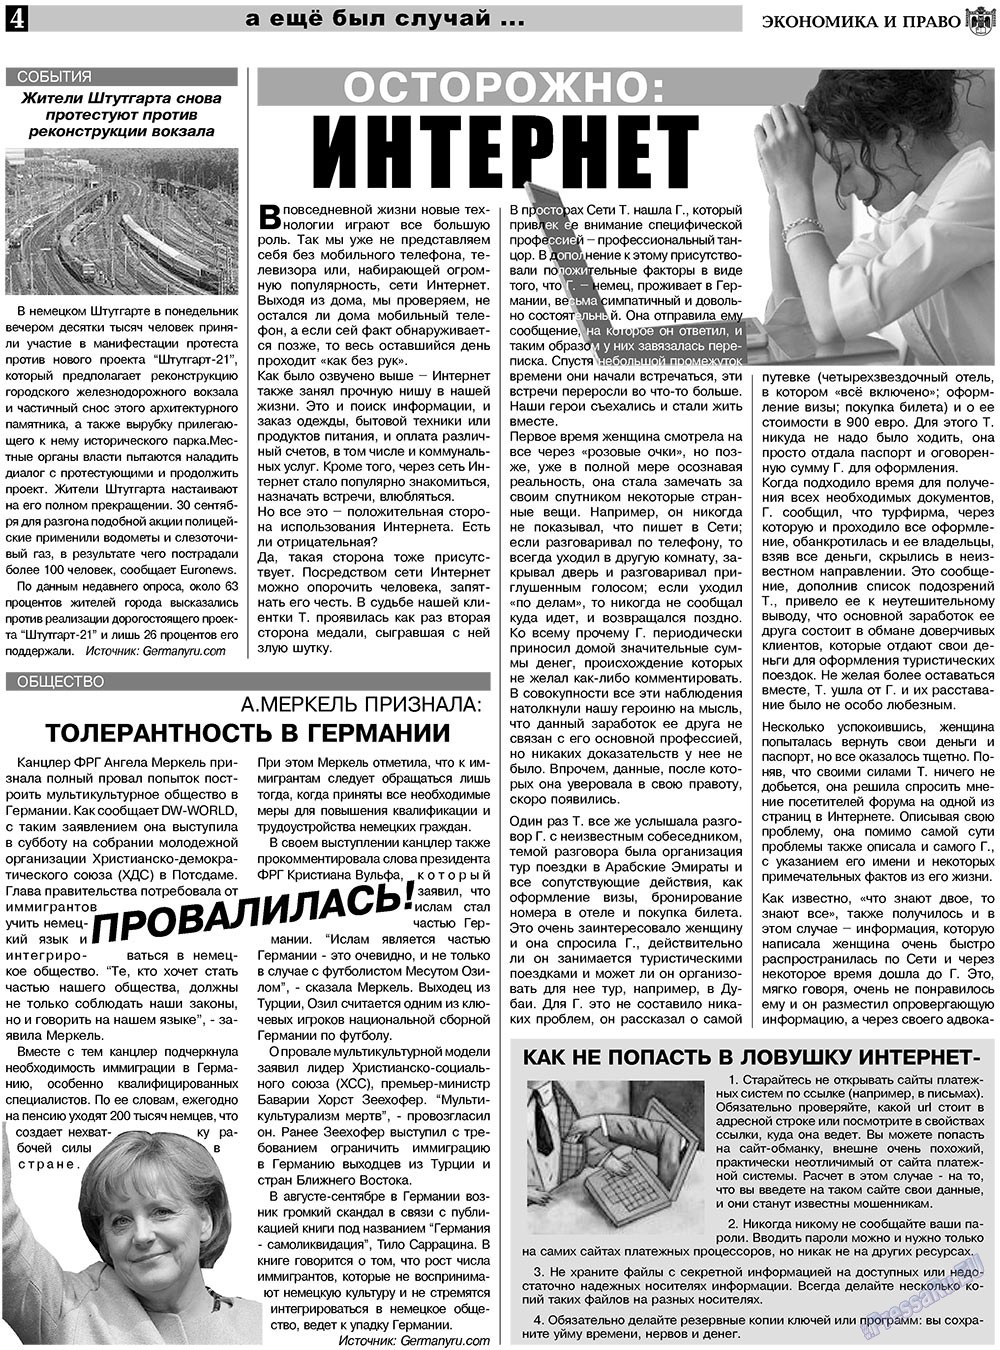 Экономика и право, газета. 2010 №11 стр.4